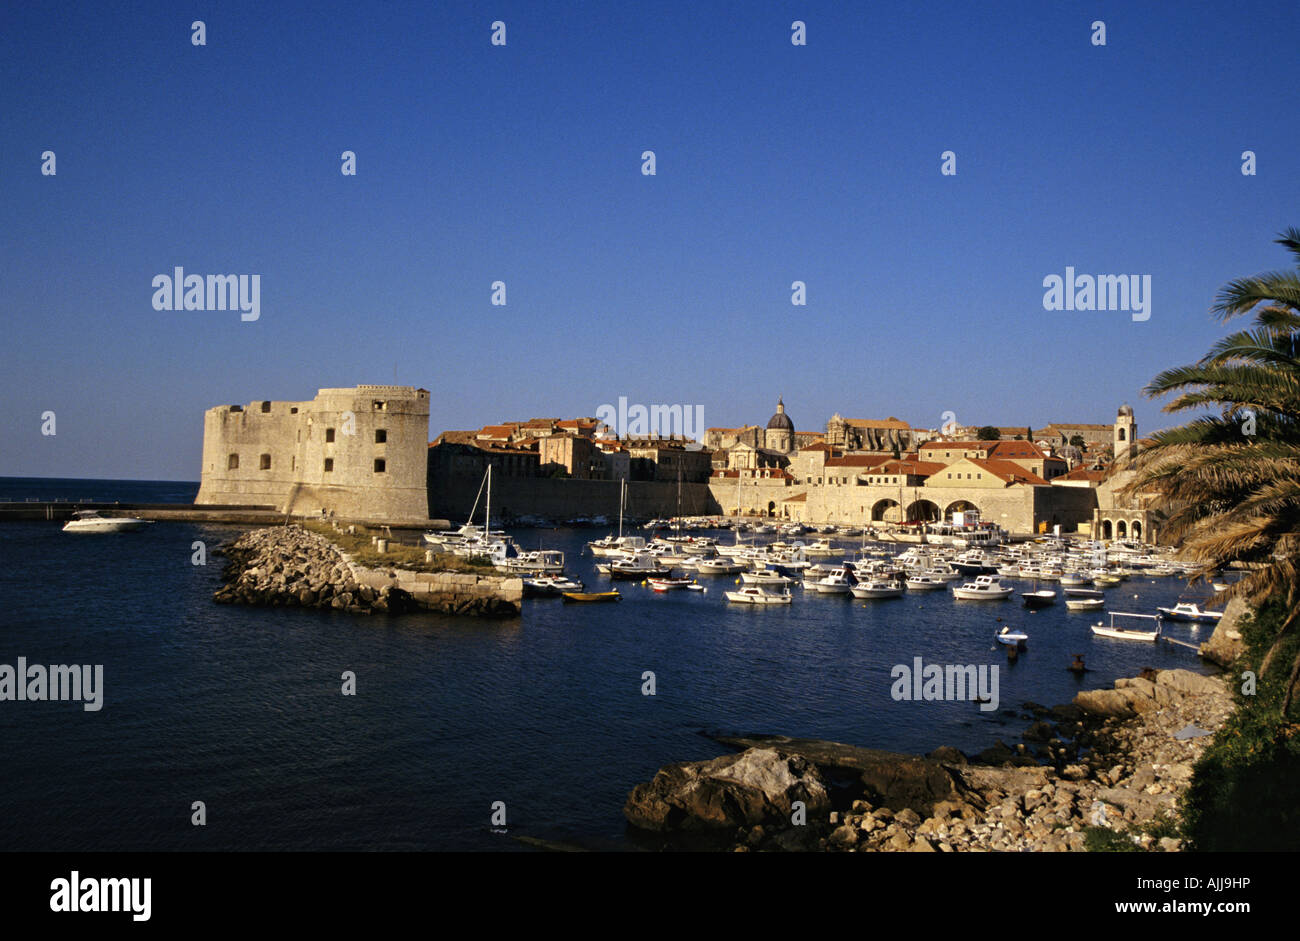 Kroatien Dalmatien Dubrovnik - Altstadt von Dubrovnik Croatie | Dalmatie Dubrovnik - Vieille ville de Dubrovnik Banque D'Images